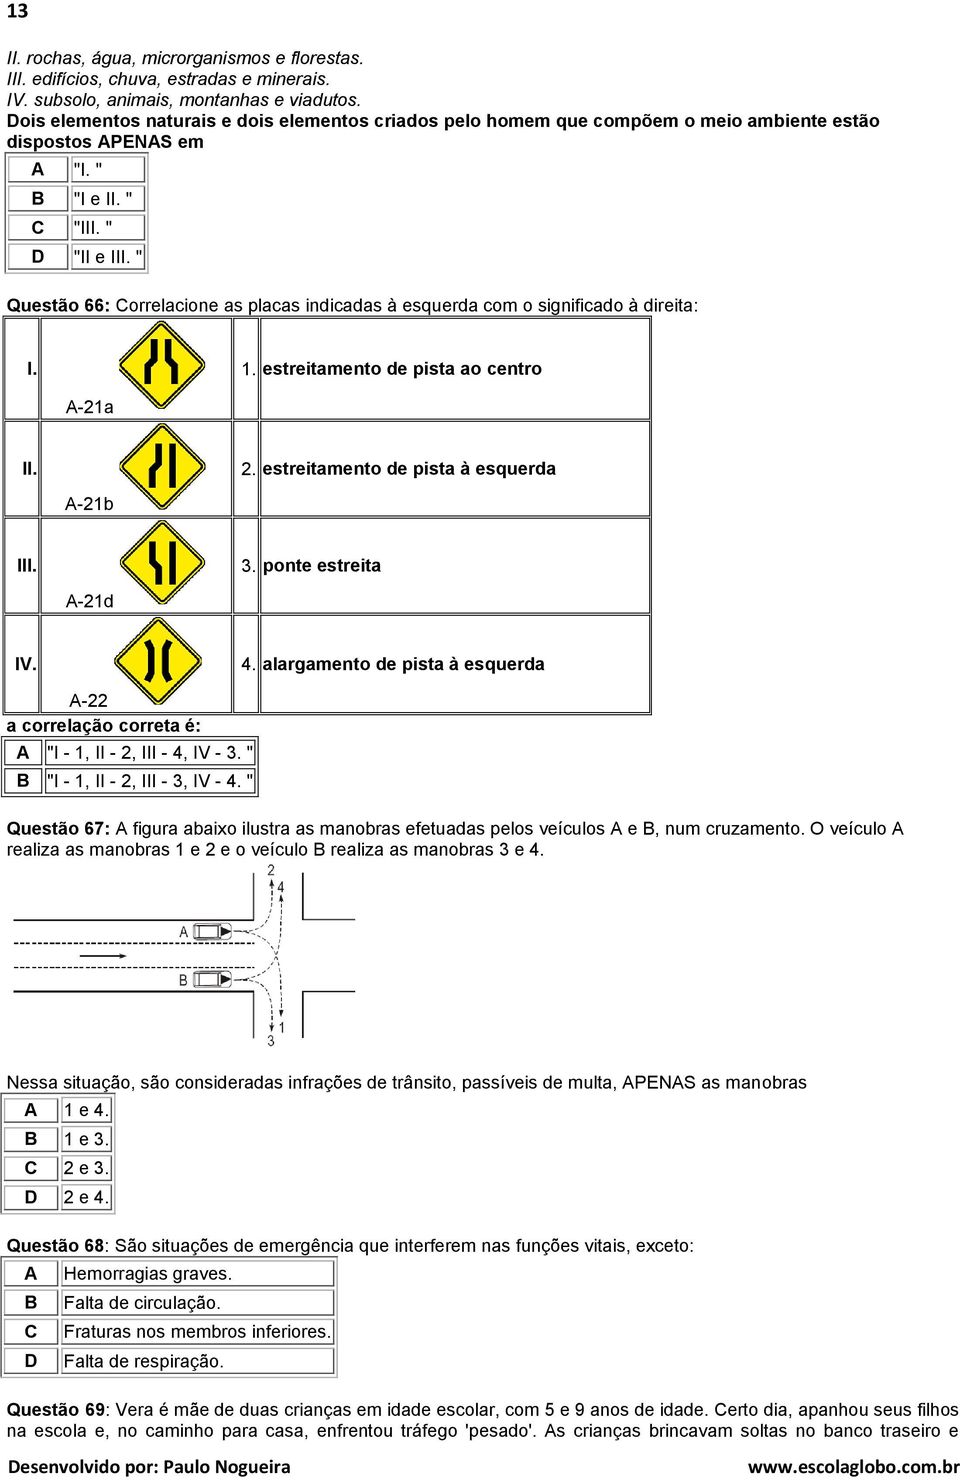 " Questão 66: orrelacione as placas indicadas à esquerda com o significado à direita: I. 1. estreitamento de pista ao centro -21a II. 2. estreitamento de pista à esquerda -21b III. 3.